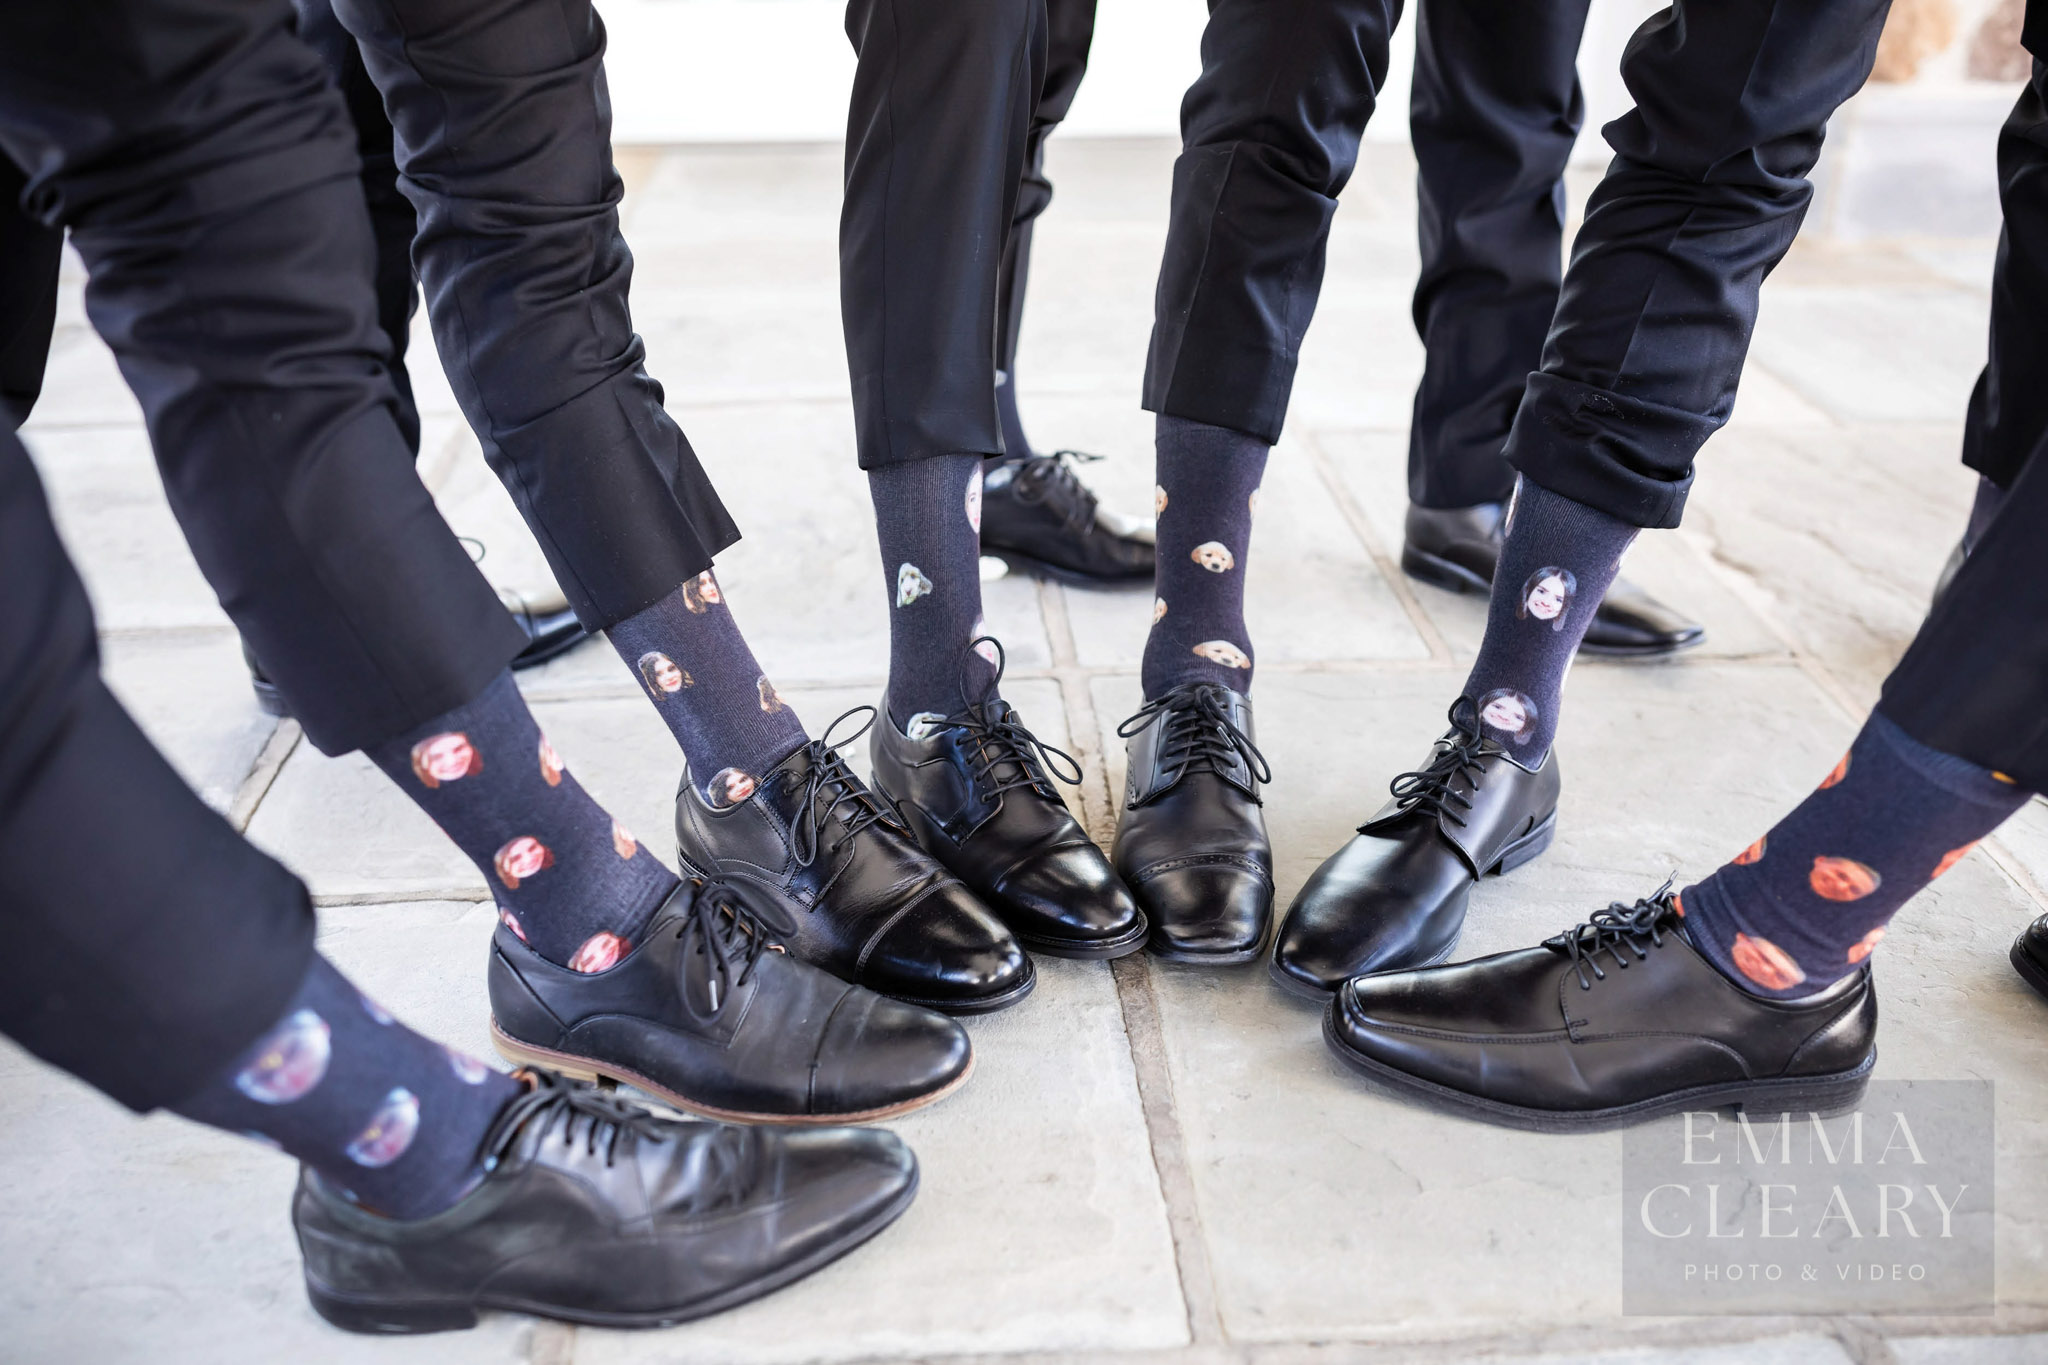 Groomsmen's socks